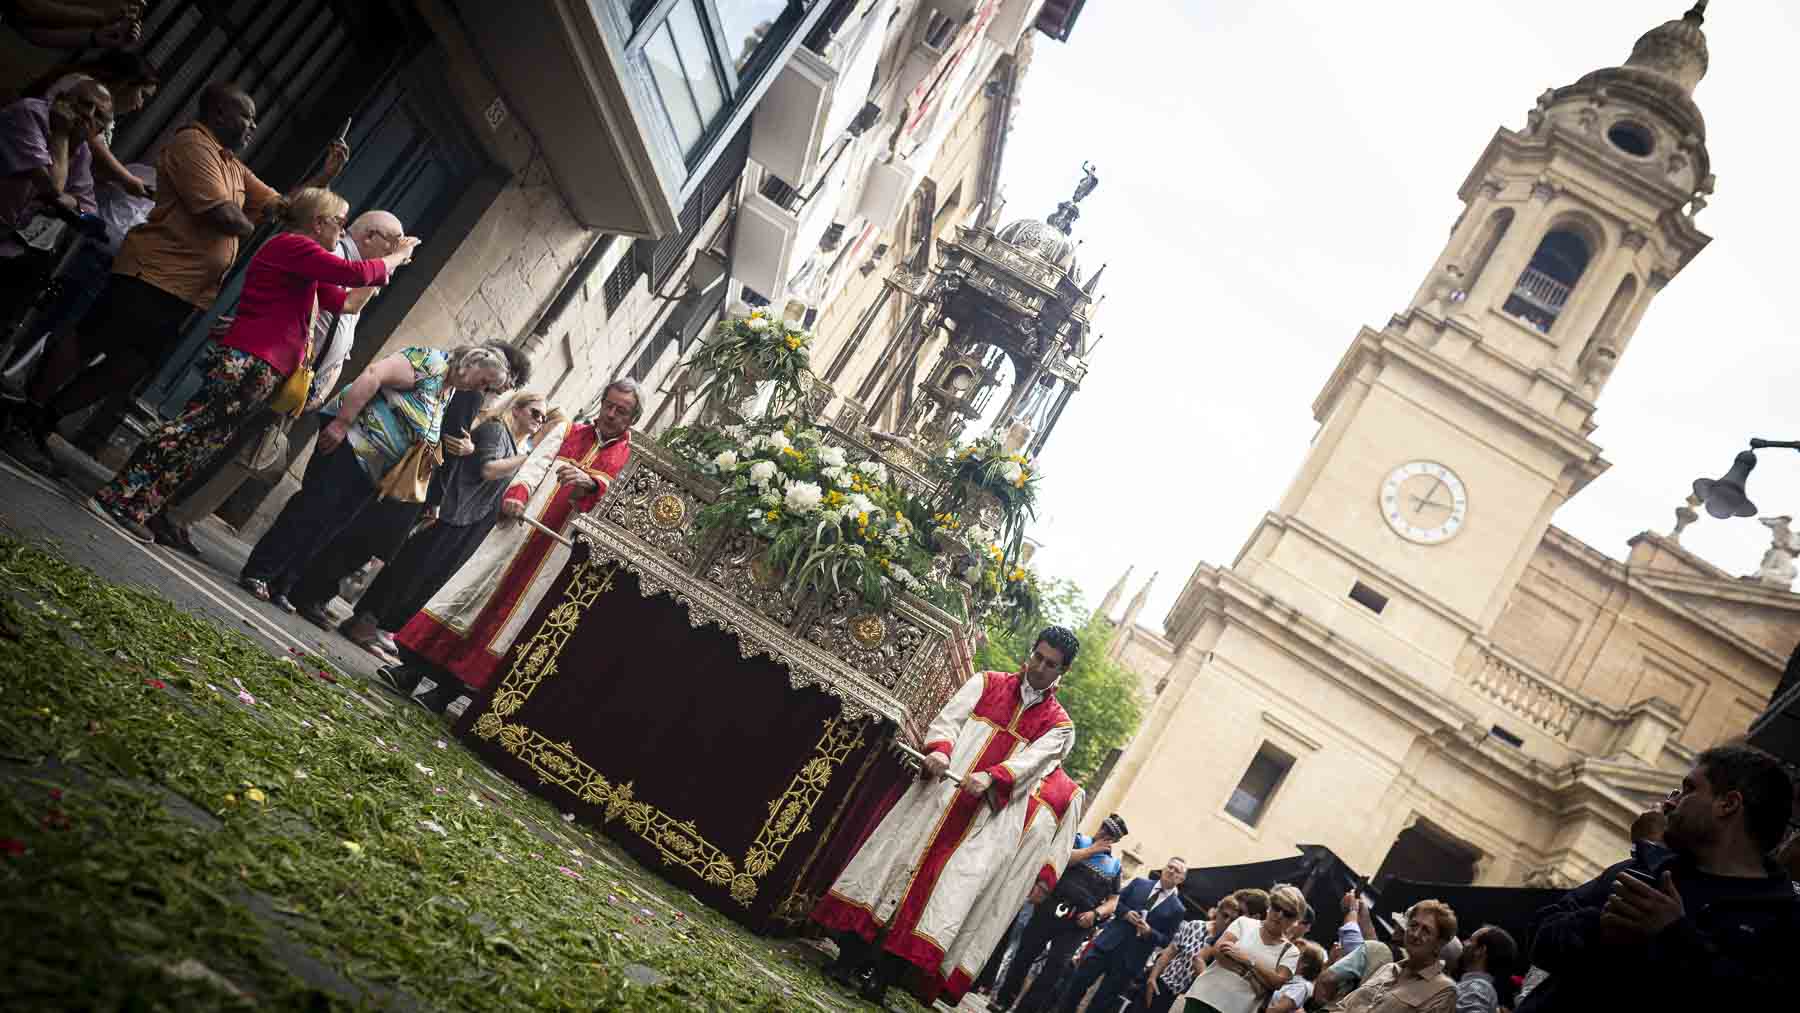 Abaurrea advierte que revisarán y regularizarán las relaciones de Pamplona con la Iglesia